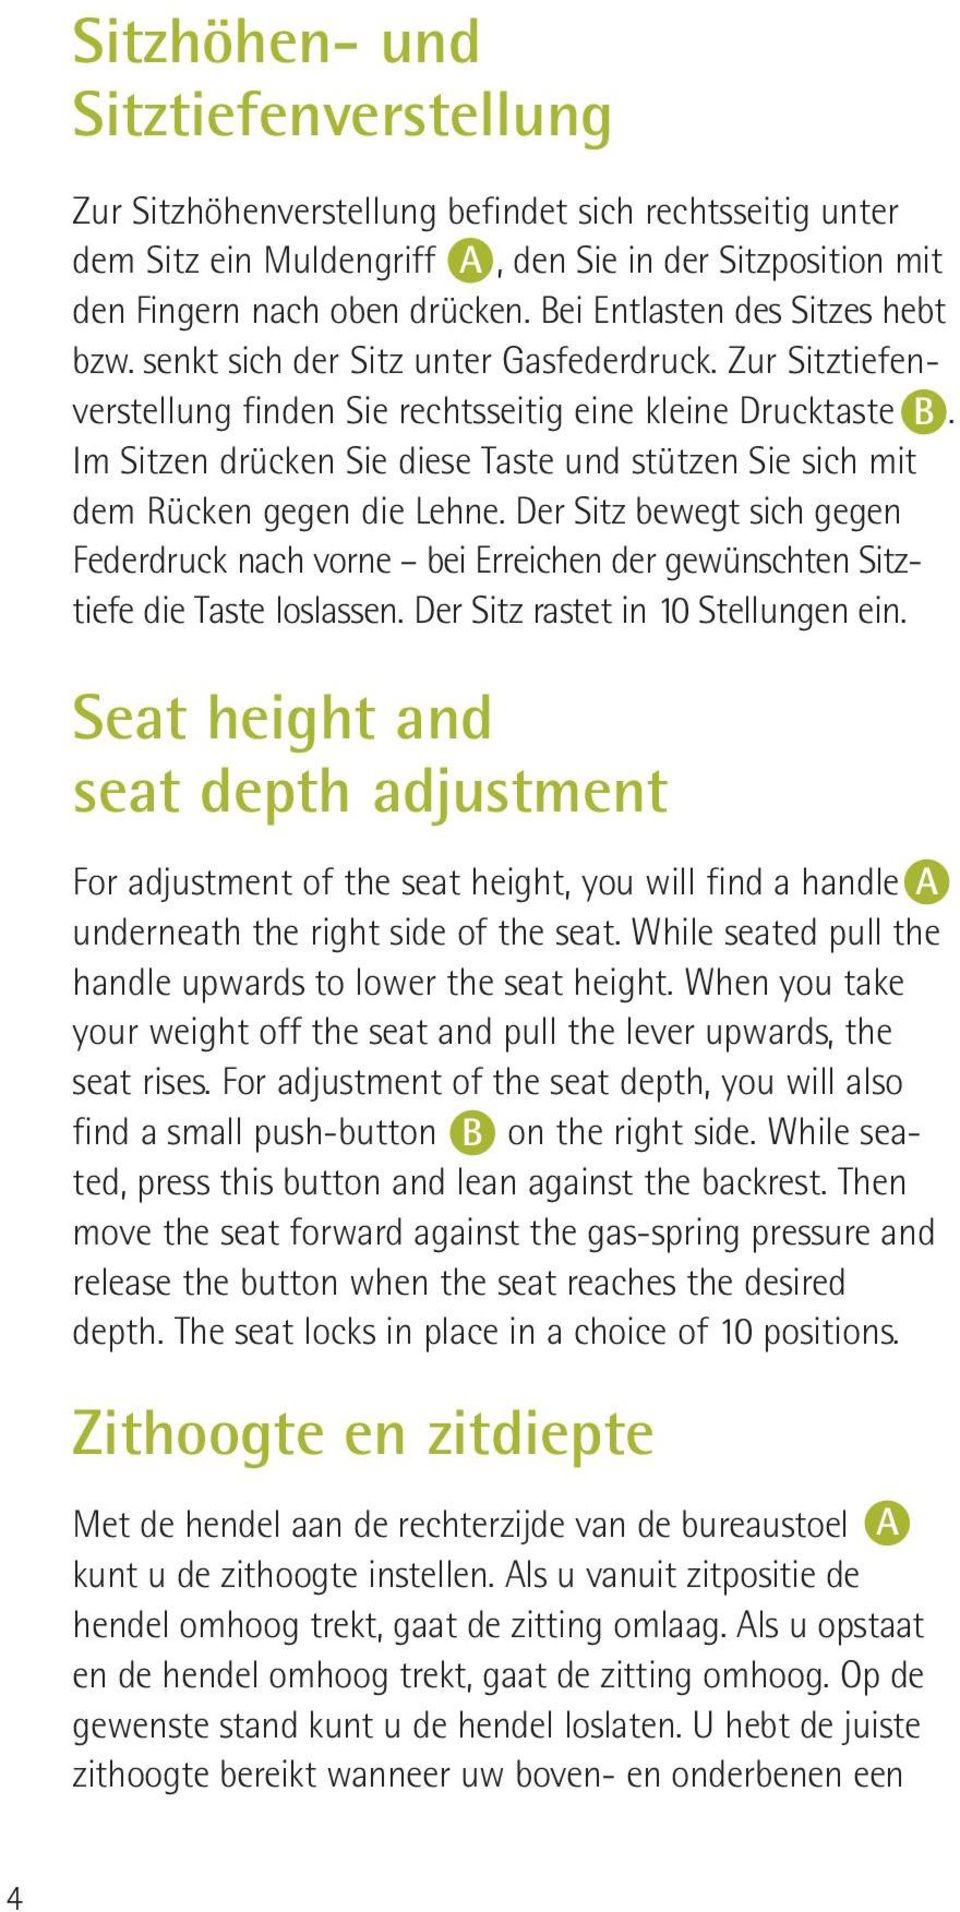 Im Sitzen drücken Sie diese Taste und stützen Sie sich mit dem Rücken gegen die Lehne. Der Sitz bewegt sich gegen Federdruck nach vorne bei Erreichen der gewünschten Sitztiefe die Taste loslassen.